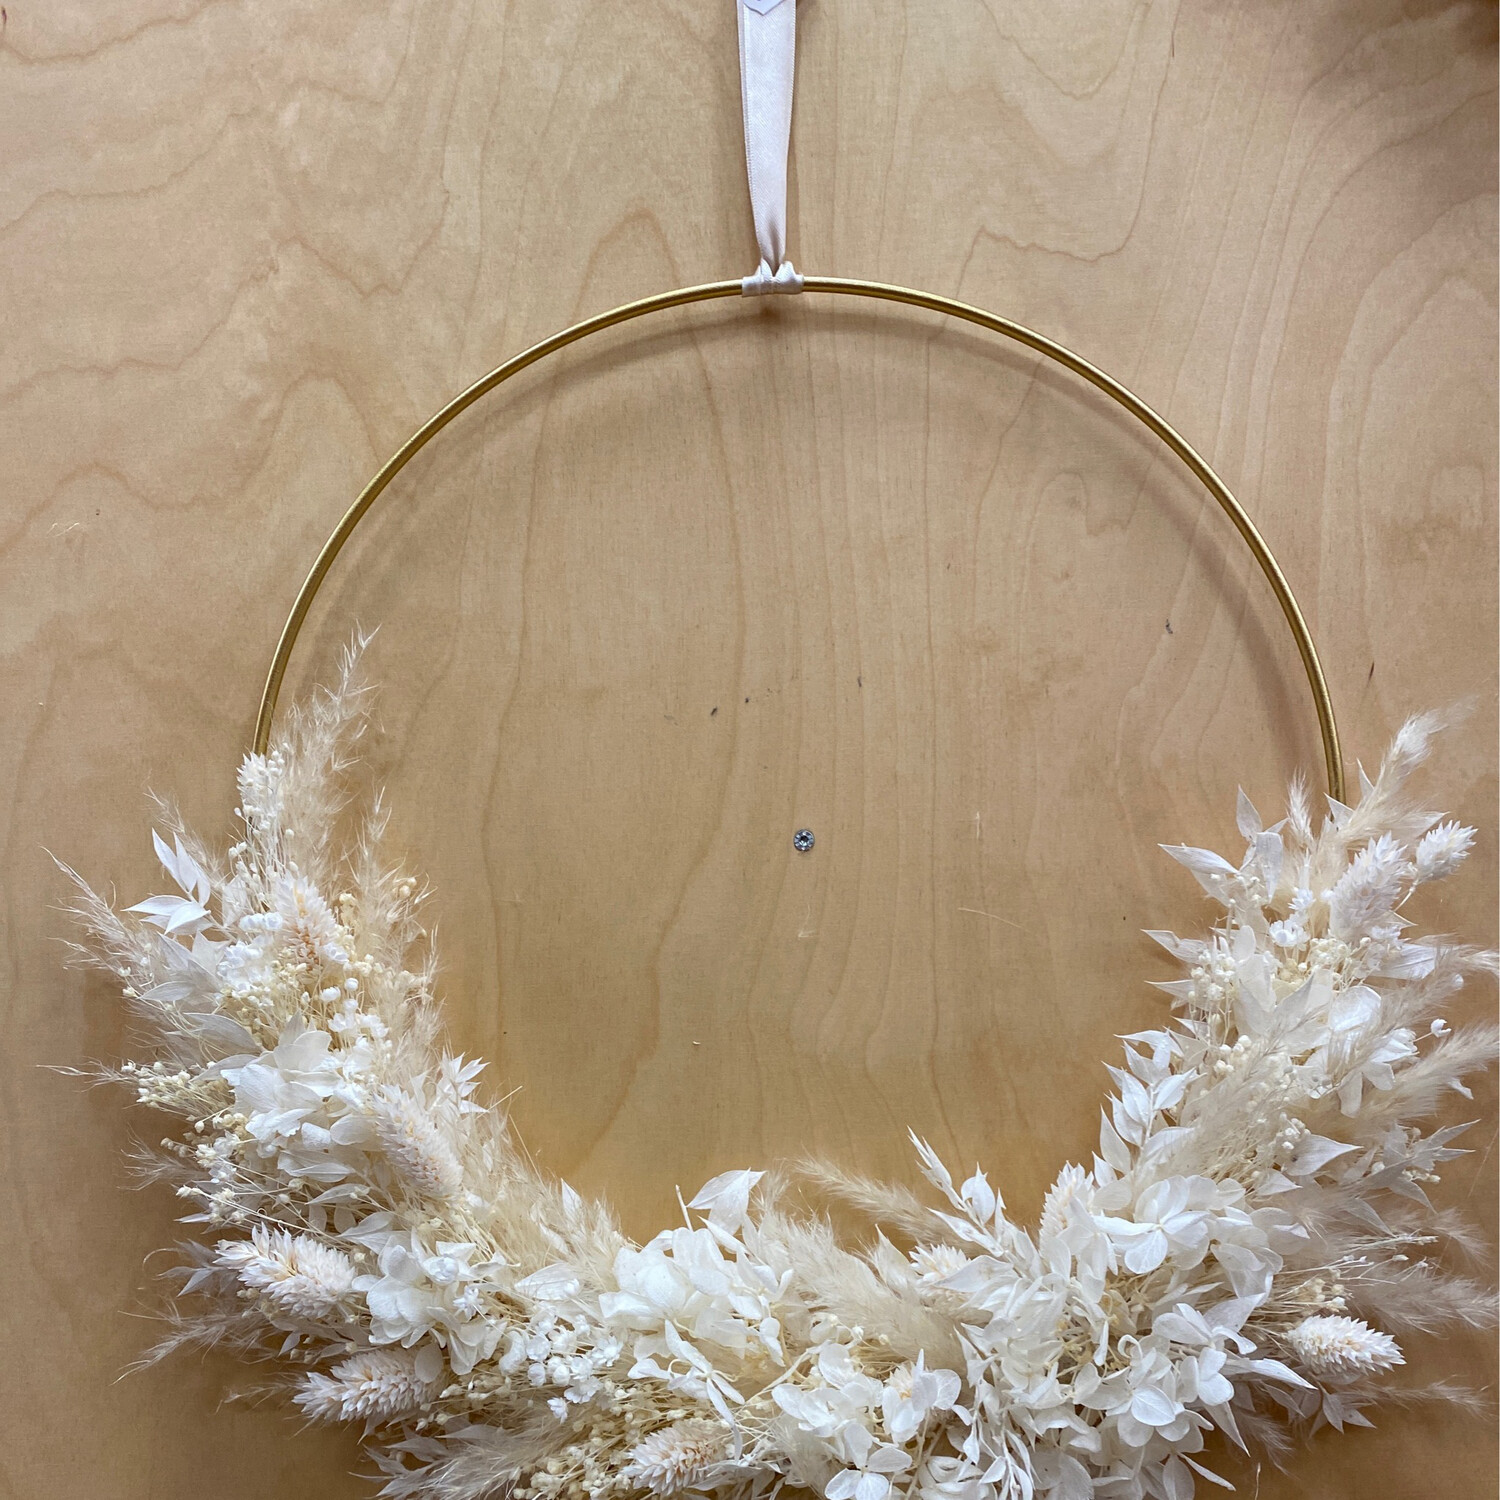 Loop, Trockenblumen Creme-weiß, 30cm Durchmesser 